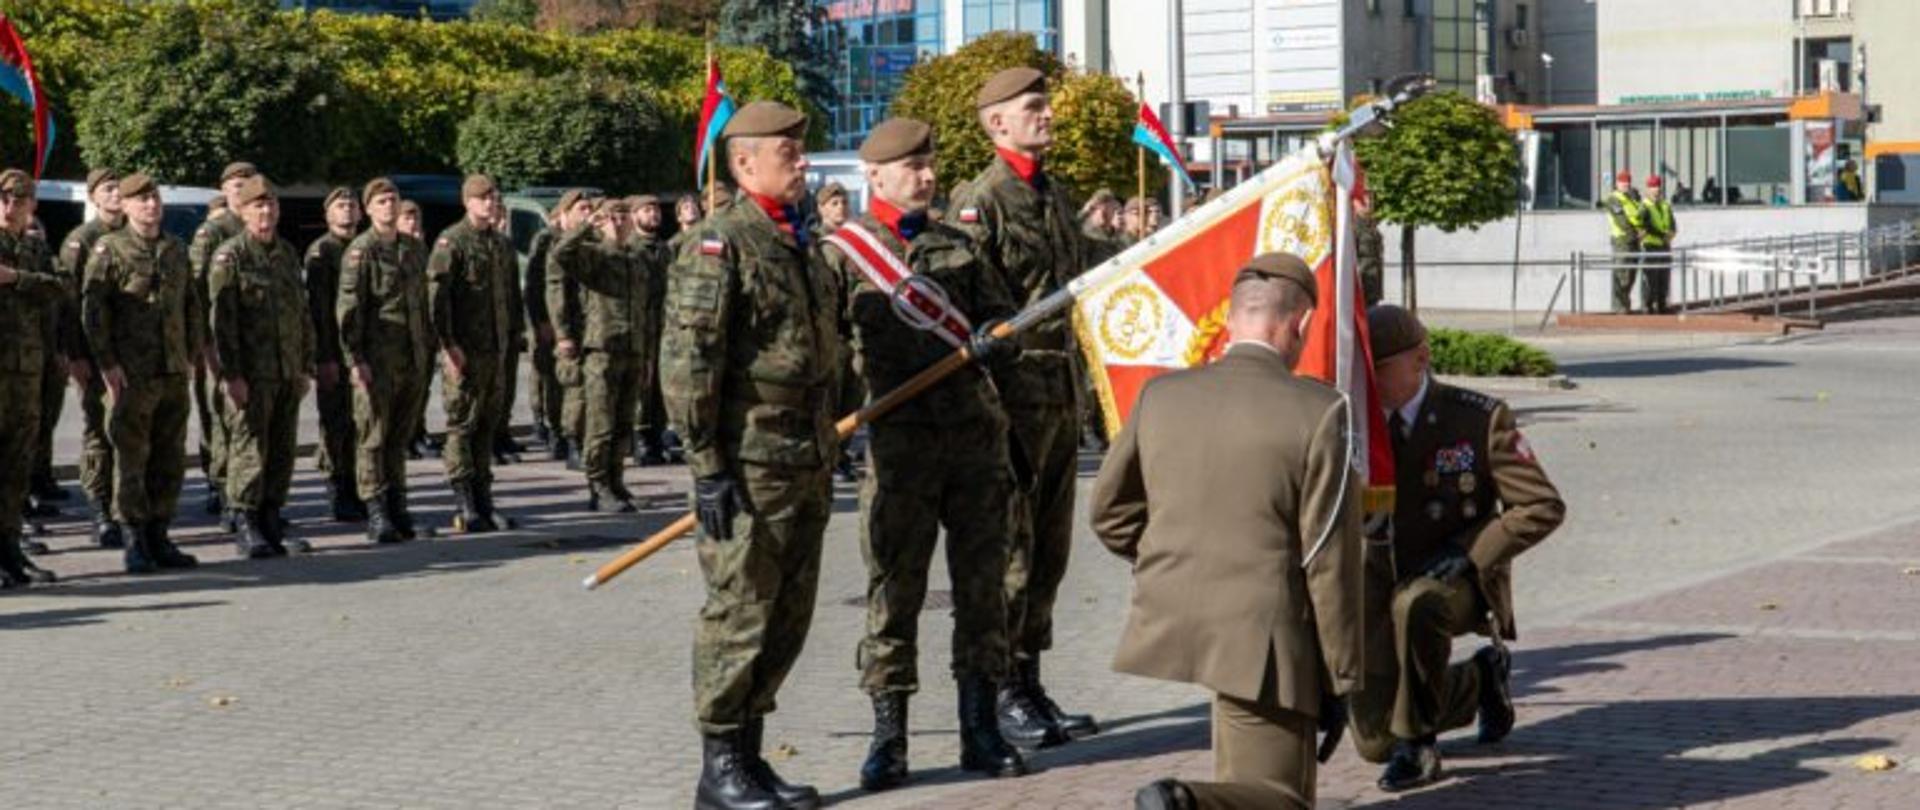 Przekazanie obowiązków nowemu dowódcy 3 Podkarpackiej Brygady Obrony Terytorialnej